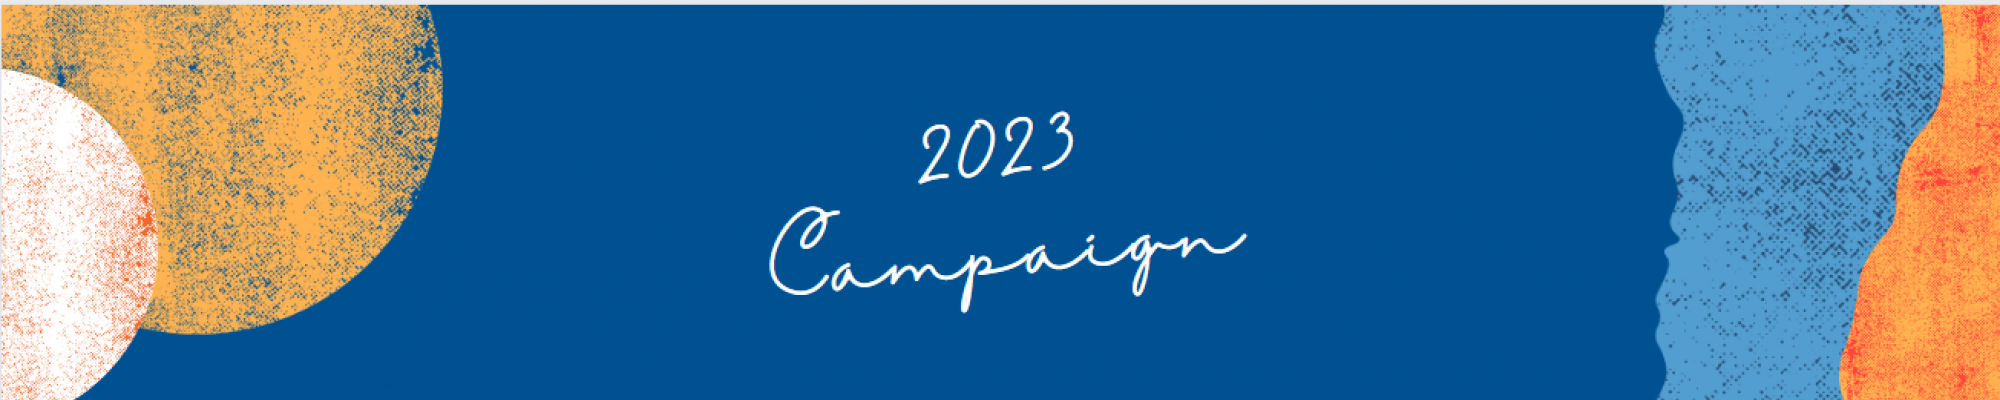 2023 Campaign